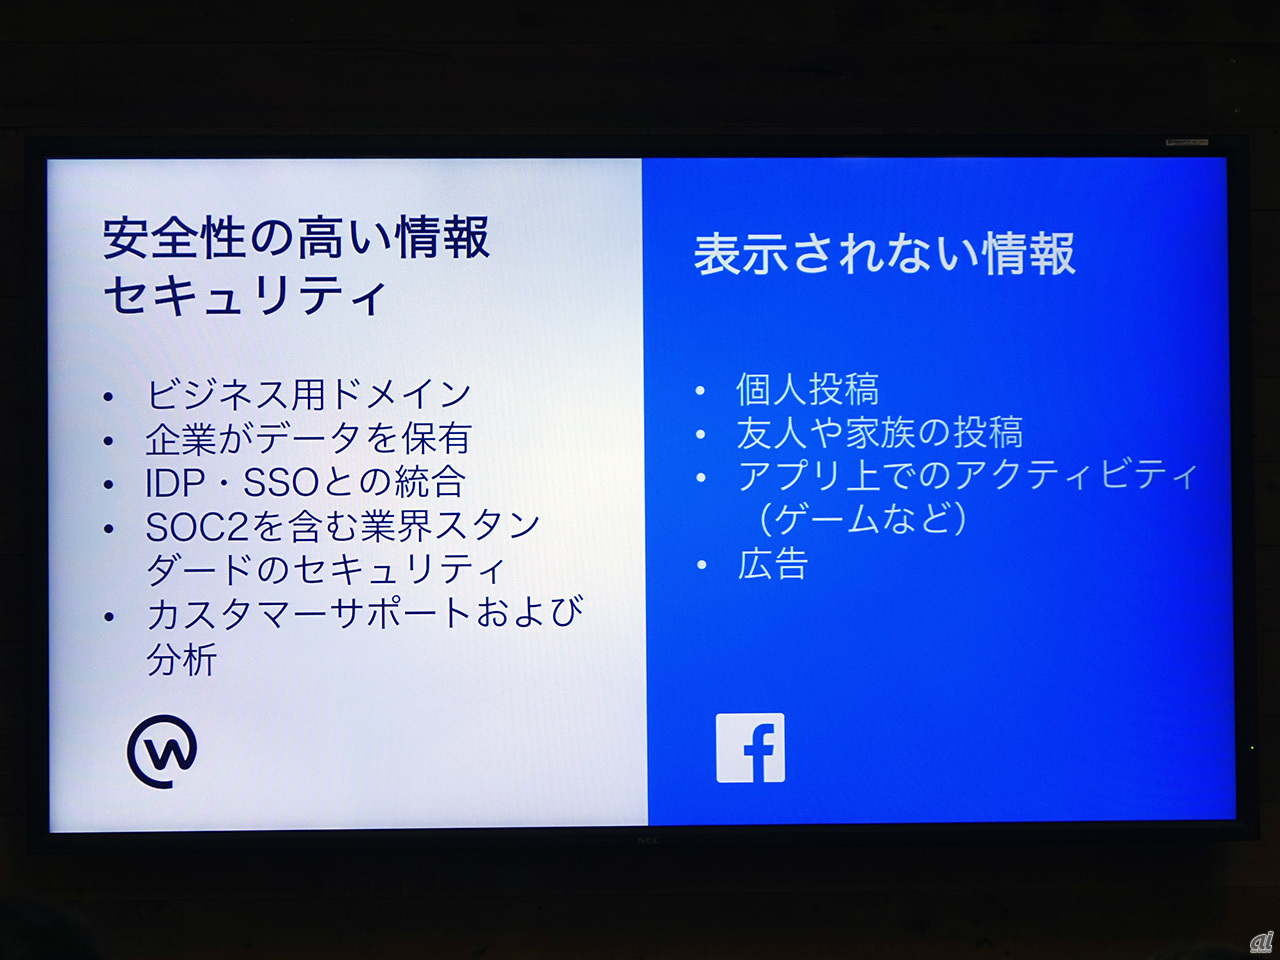 Facebook流 の働き方改革を日本に ビジネスsns Workplace が上陸 Cnet Japan